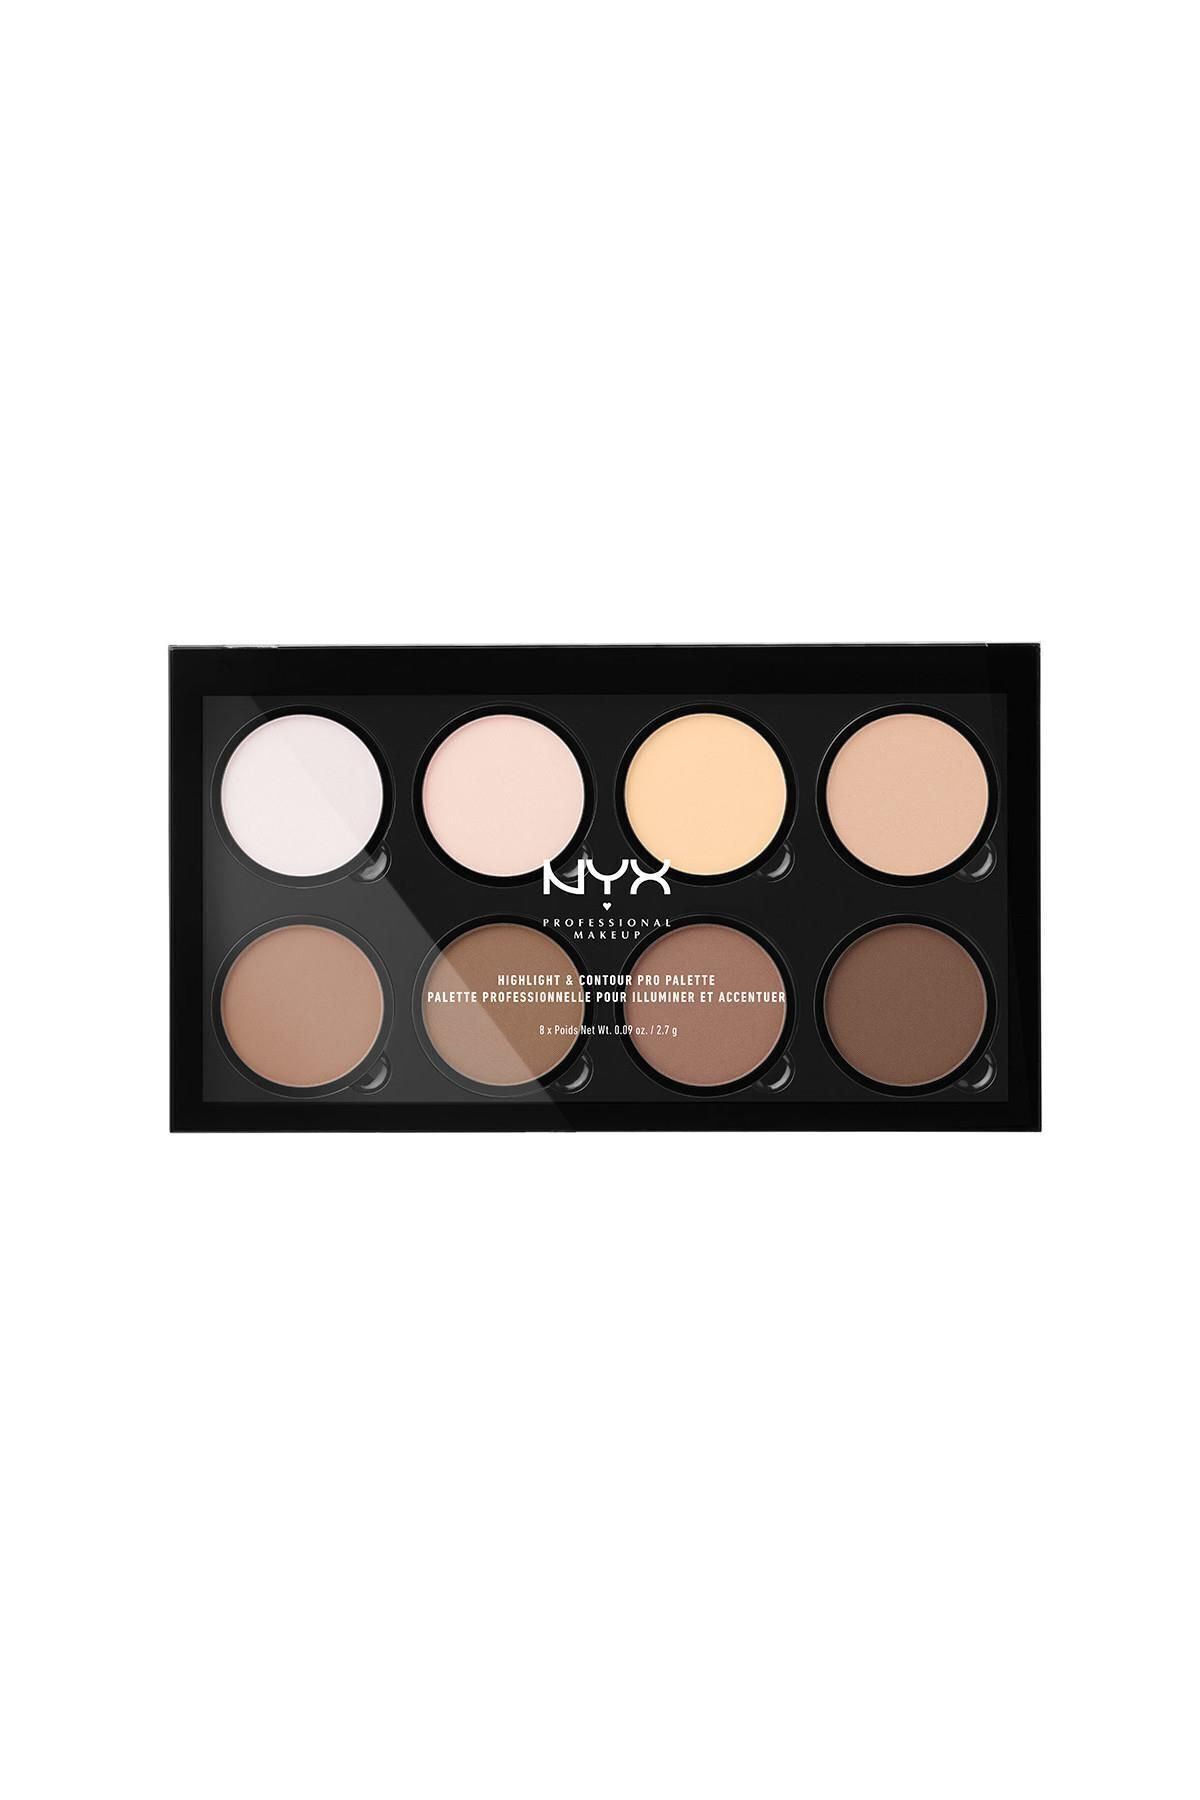 NYX Professional Makeup Aydınlatıcı & Kontür Paleti - Highlight & Contour Pro Palette 208 g 800897836245